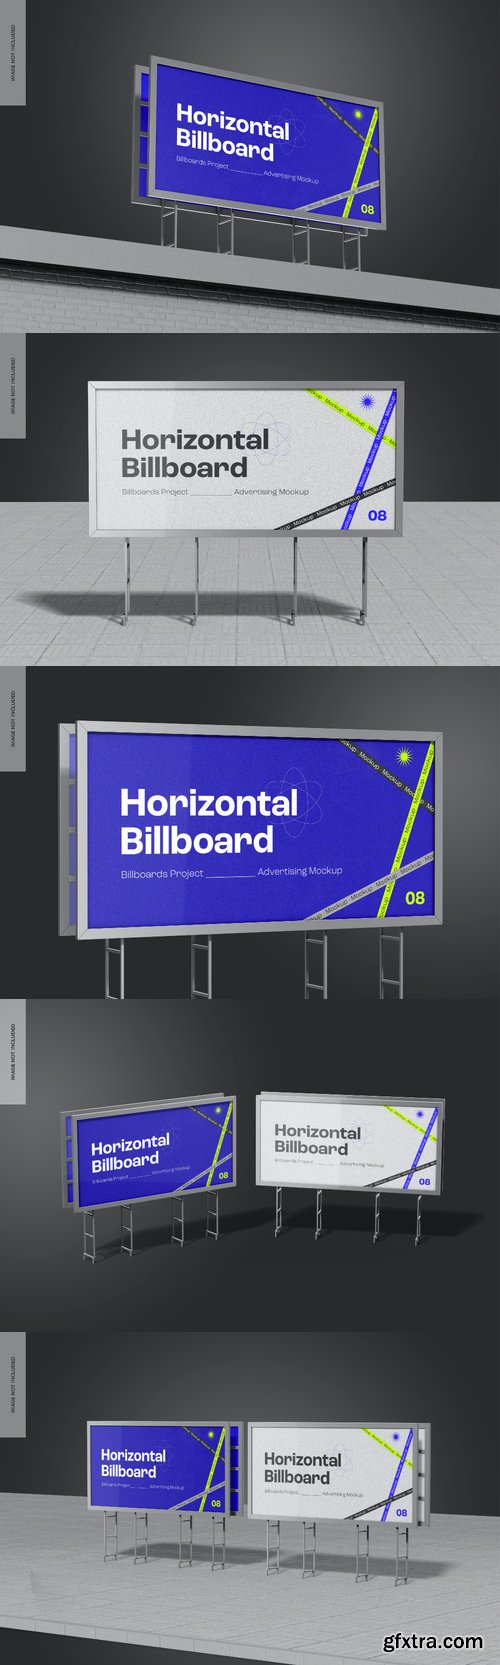 Horizontal billboard mockup